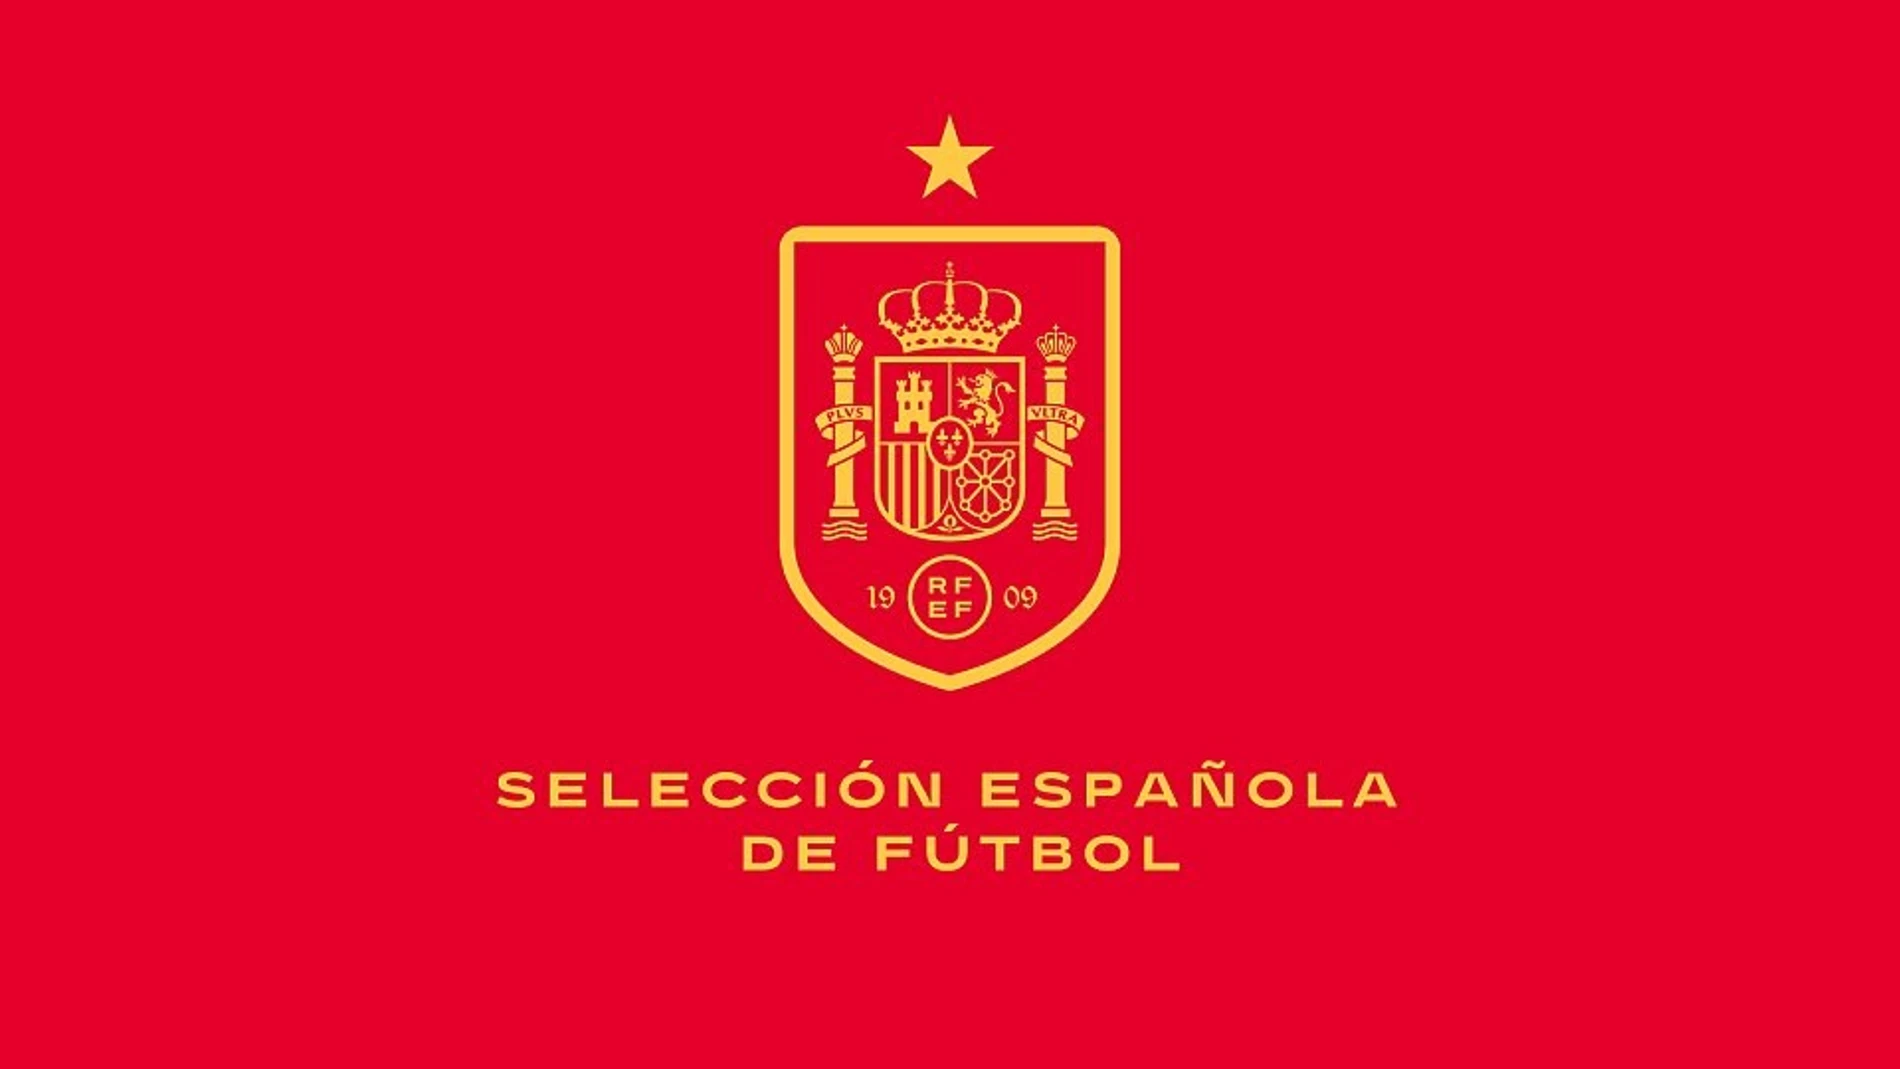 La marca única 'selección española de fútbol' igualará a los combinados nacionales masculino y femenino